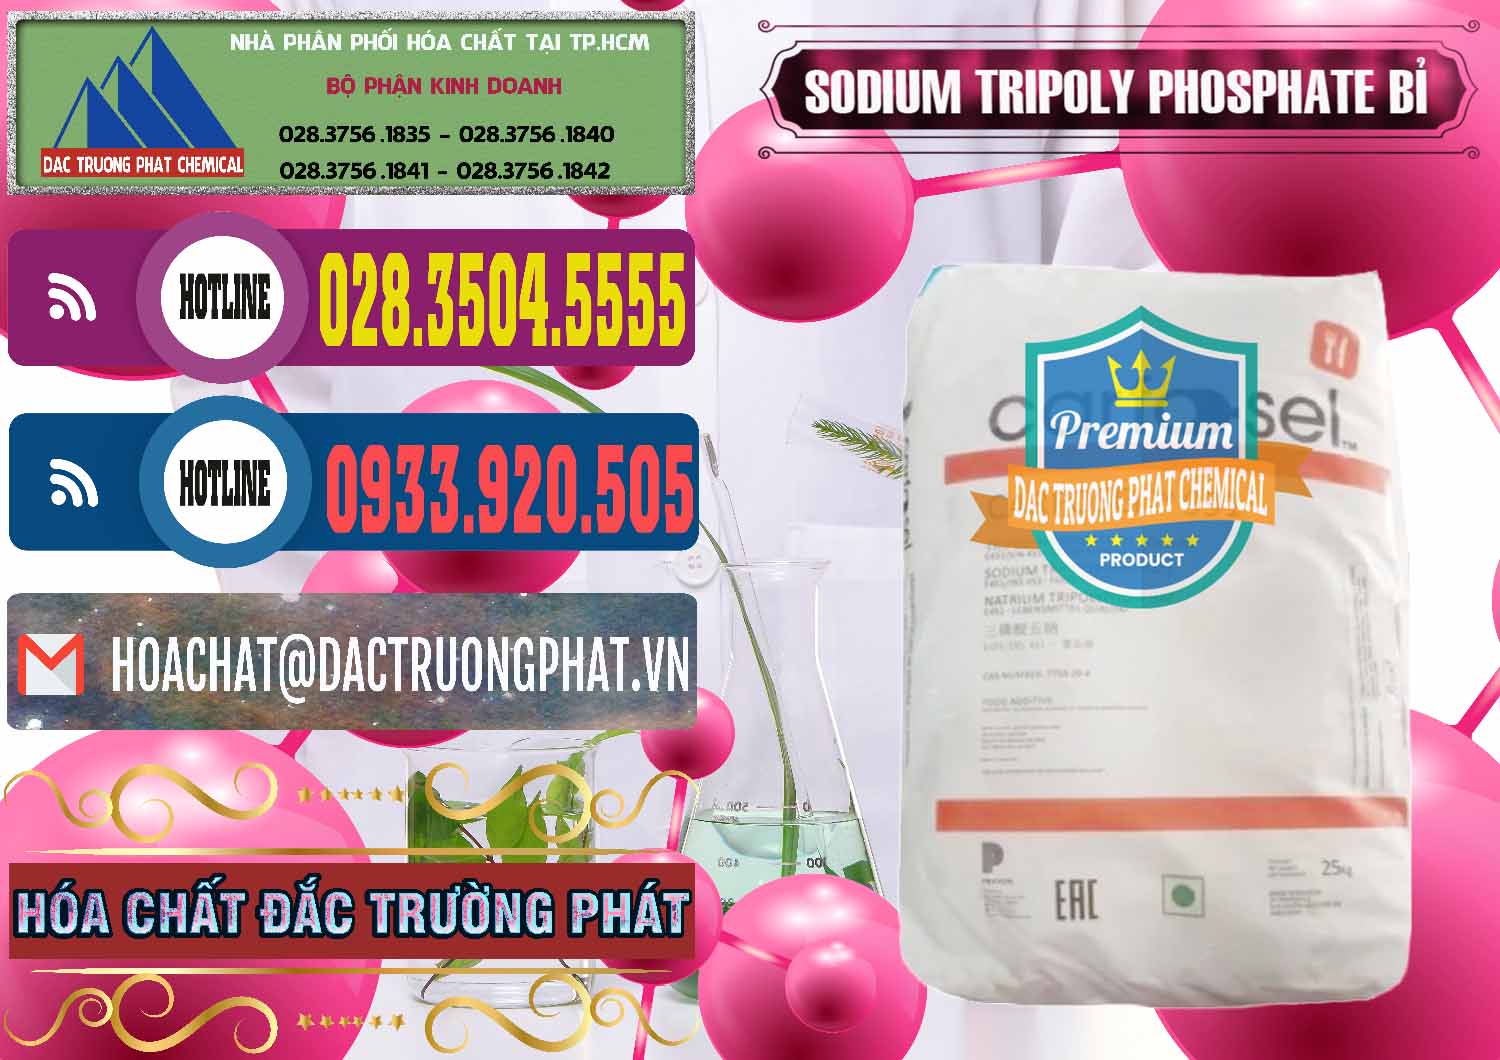 Nơi chuyên bán _ cung ứng Sodium Tripoly Phosphate - STPP Carfosel 991 Bỉ Belgium - 0429 - Đơn vị cung cấp & phân phối hóa chất tại TP.HCM - muabanhoachat.com.vn